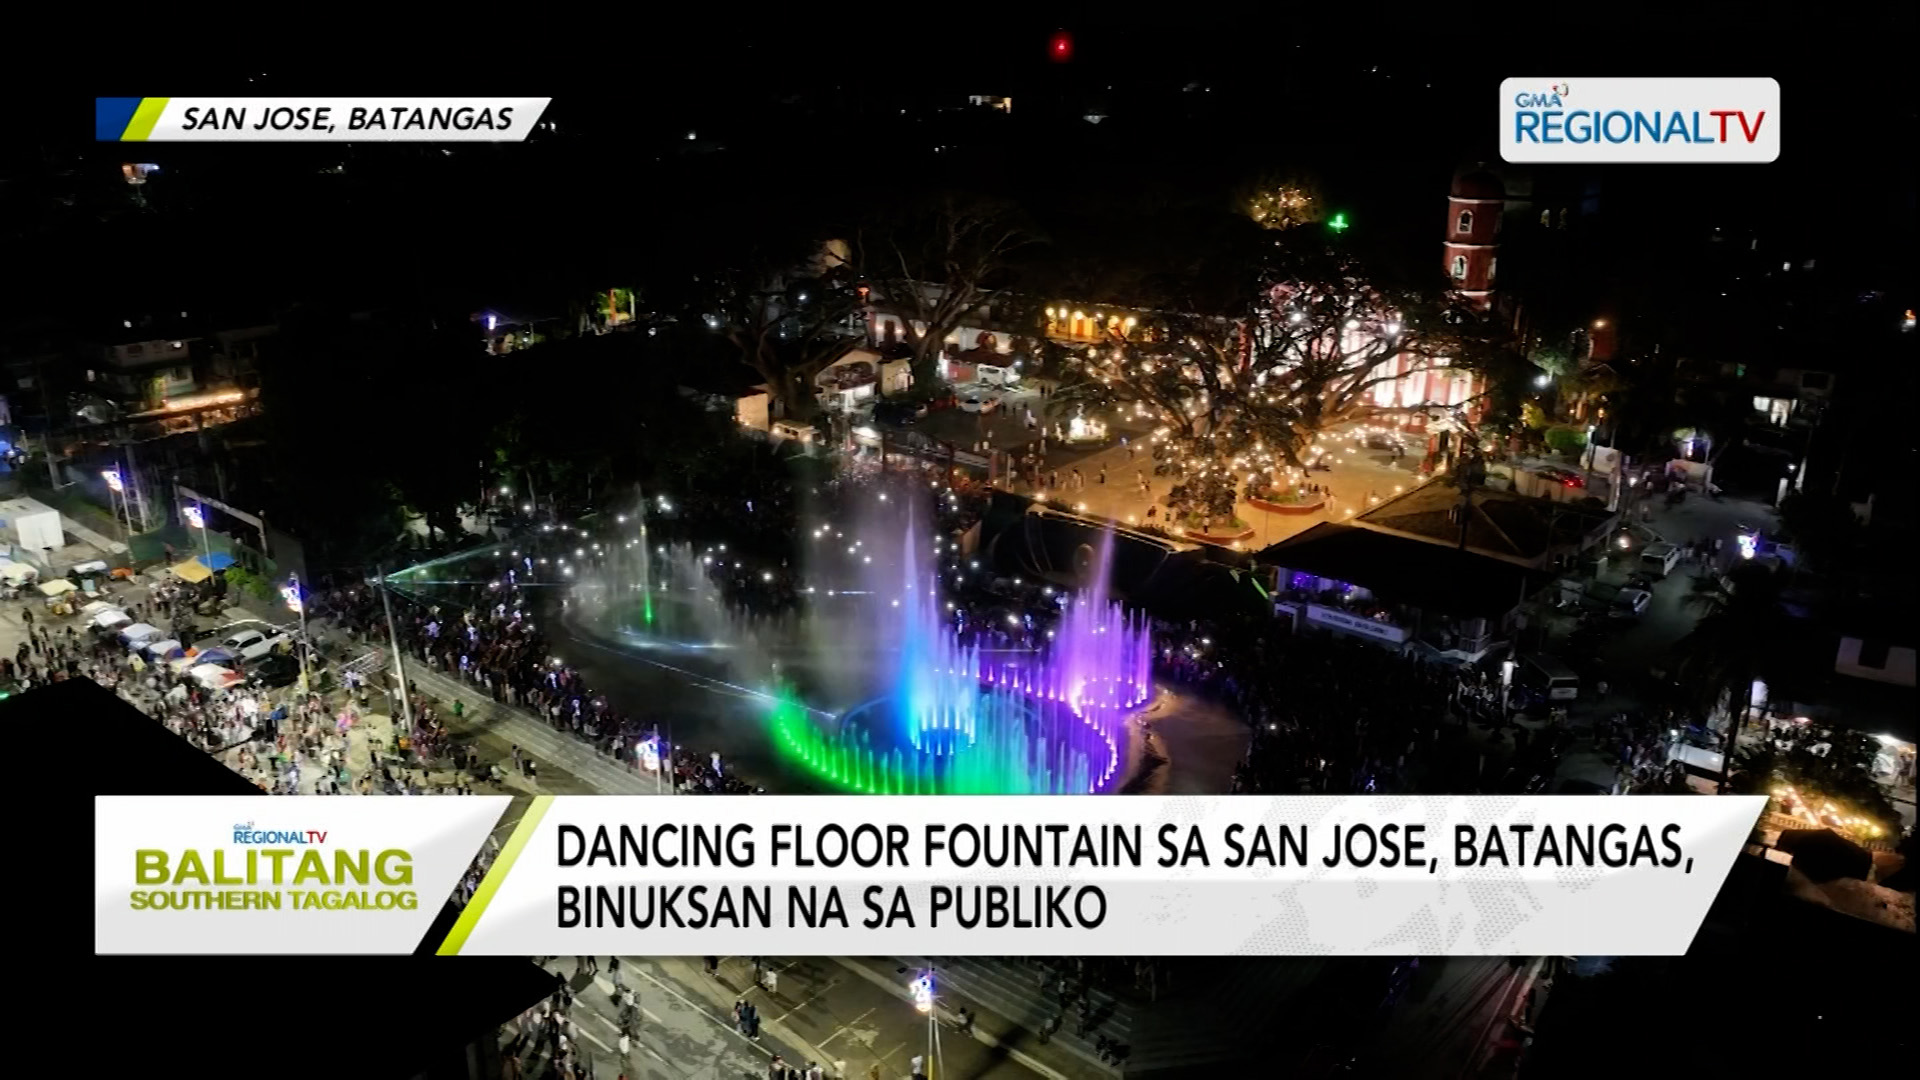 Dancing floor fountain sa San Jose, Batangas, binuksan na sa publiko